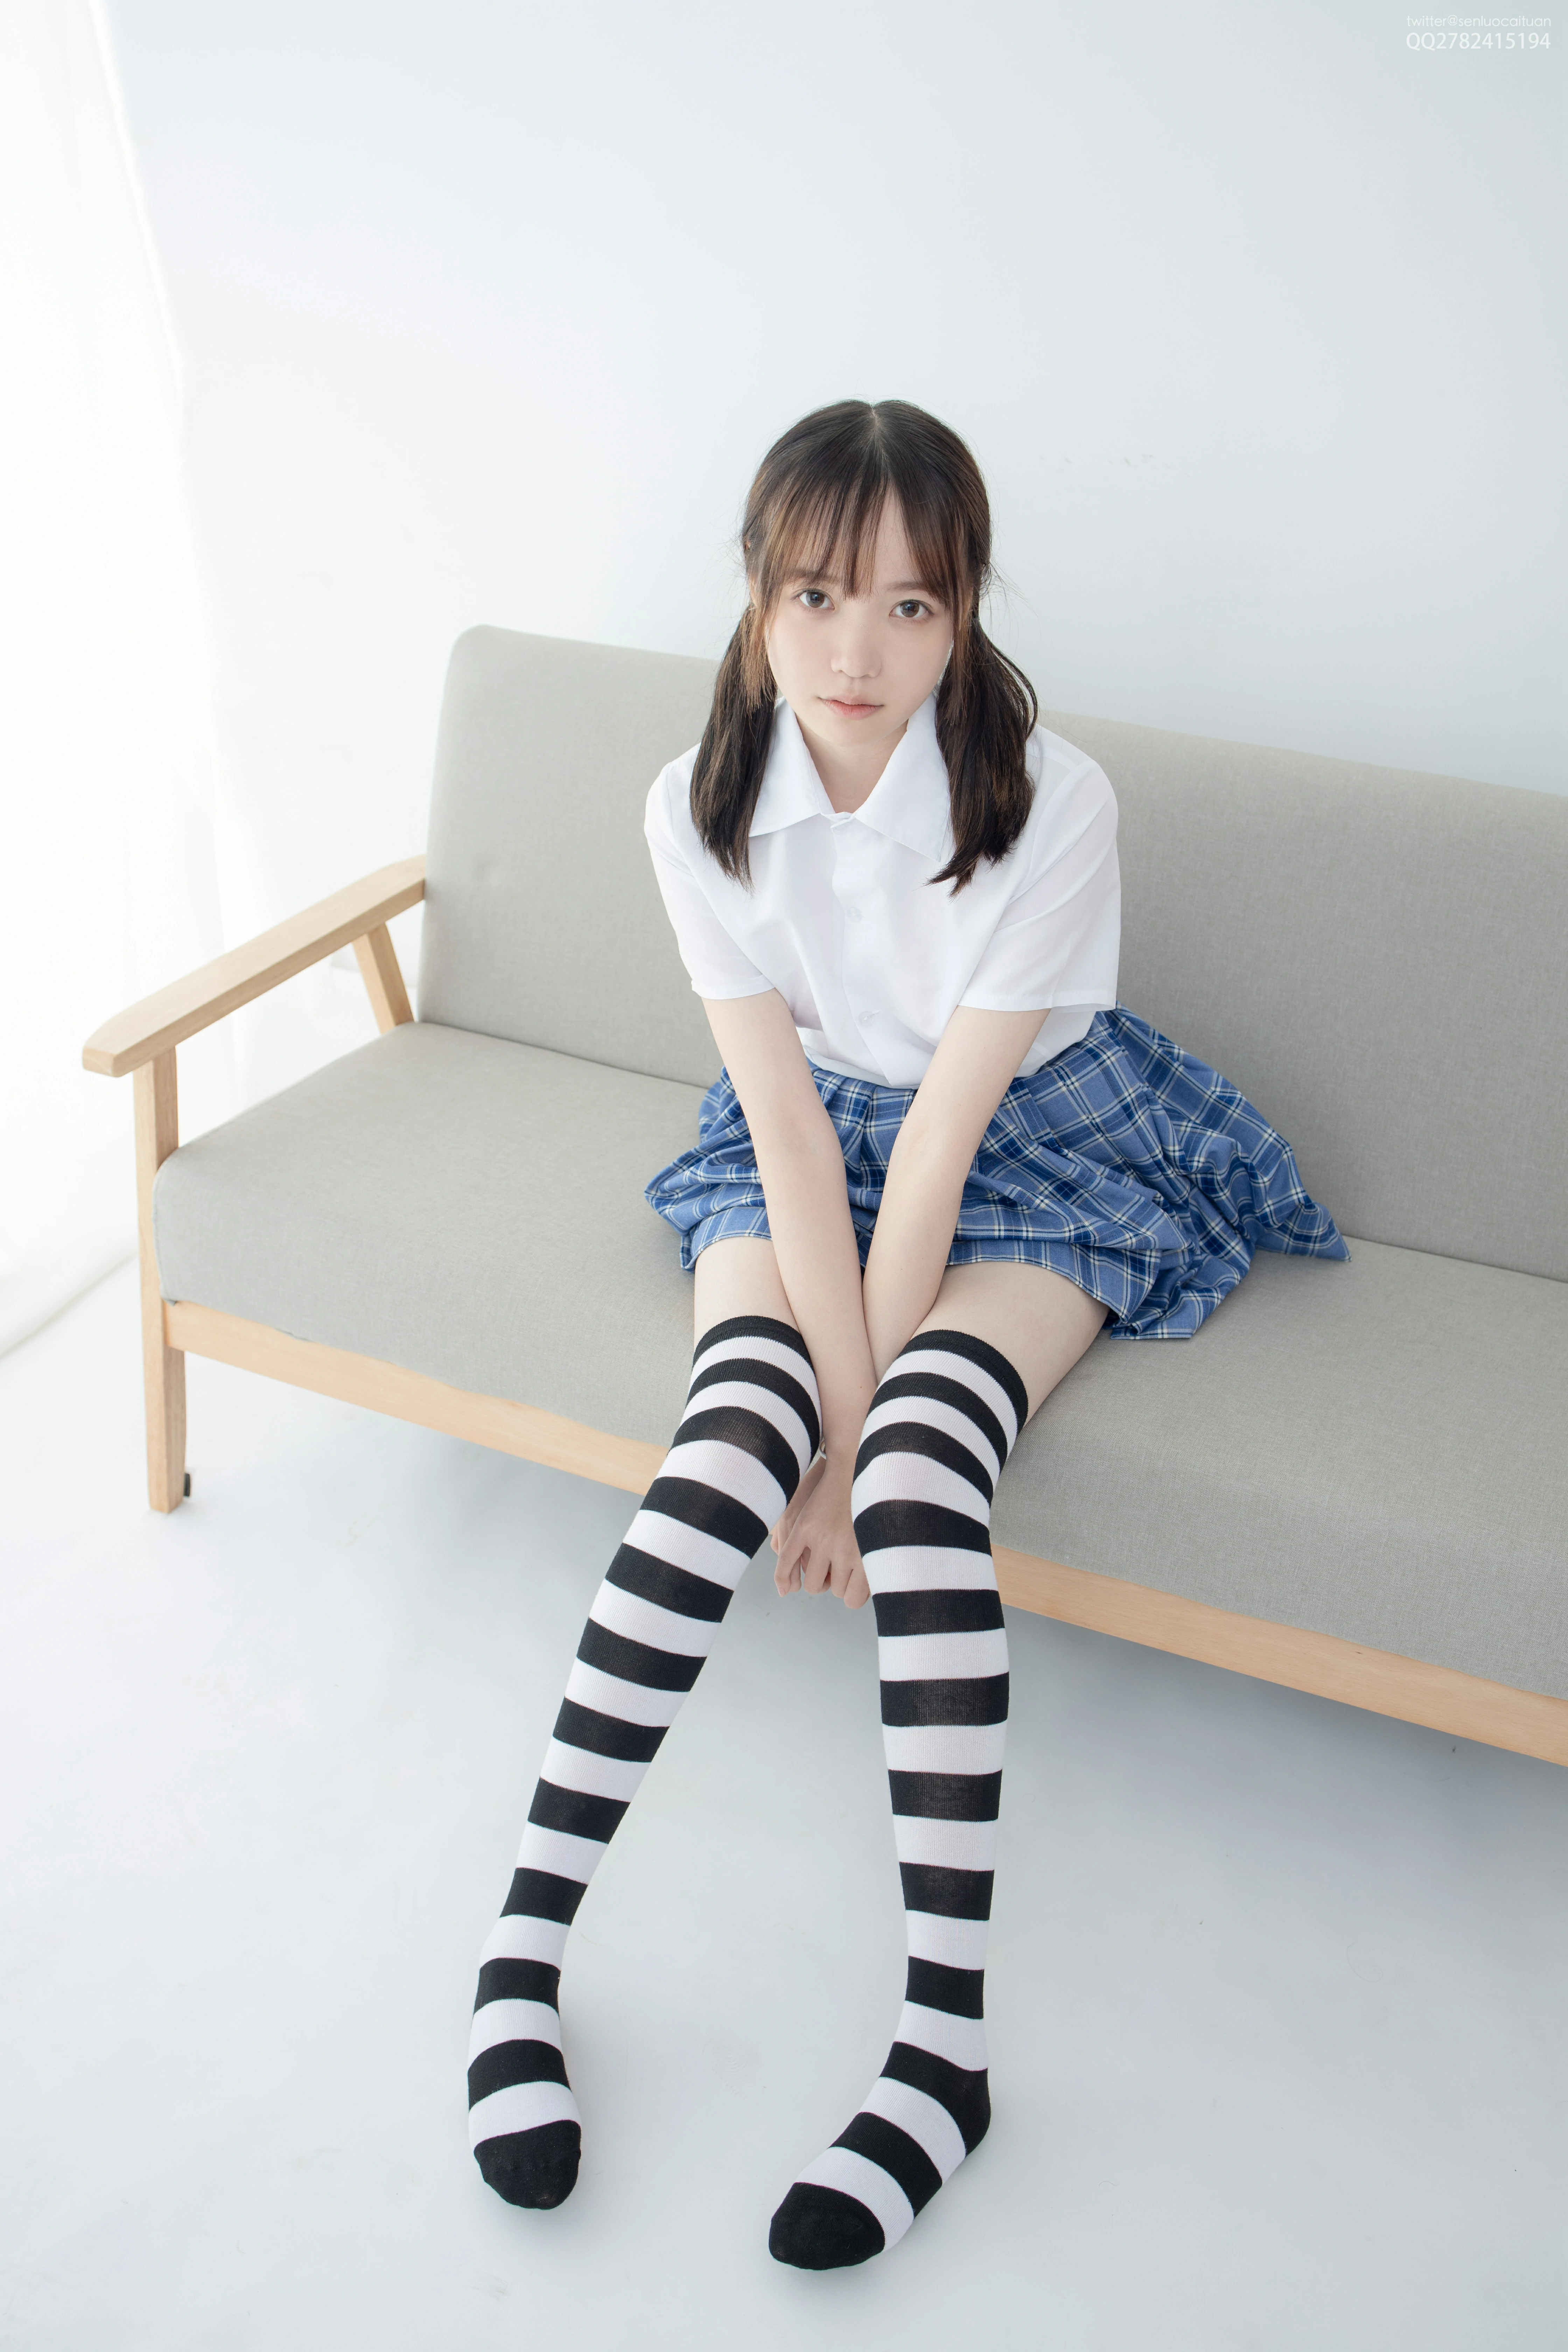 [森萝财团]JKFUN-百元系列1-4 Aika 白色短袖衬衫加格子短裙性感私房写真集,